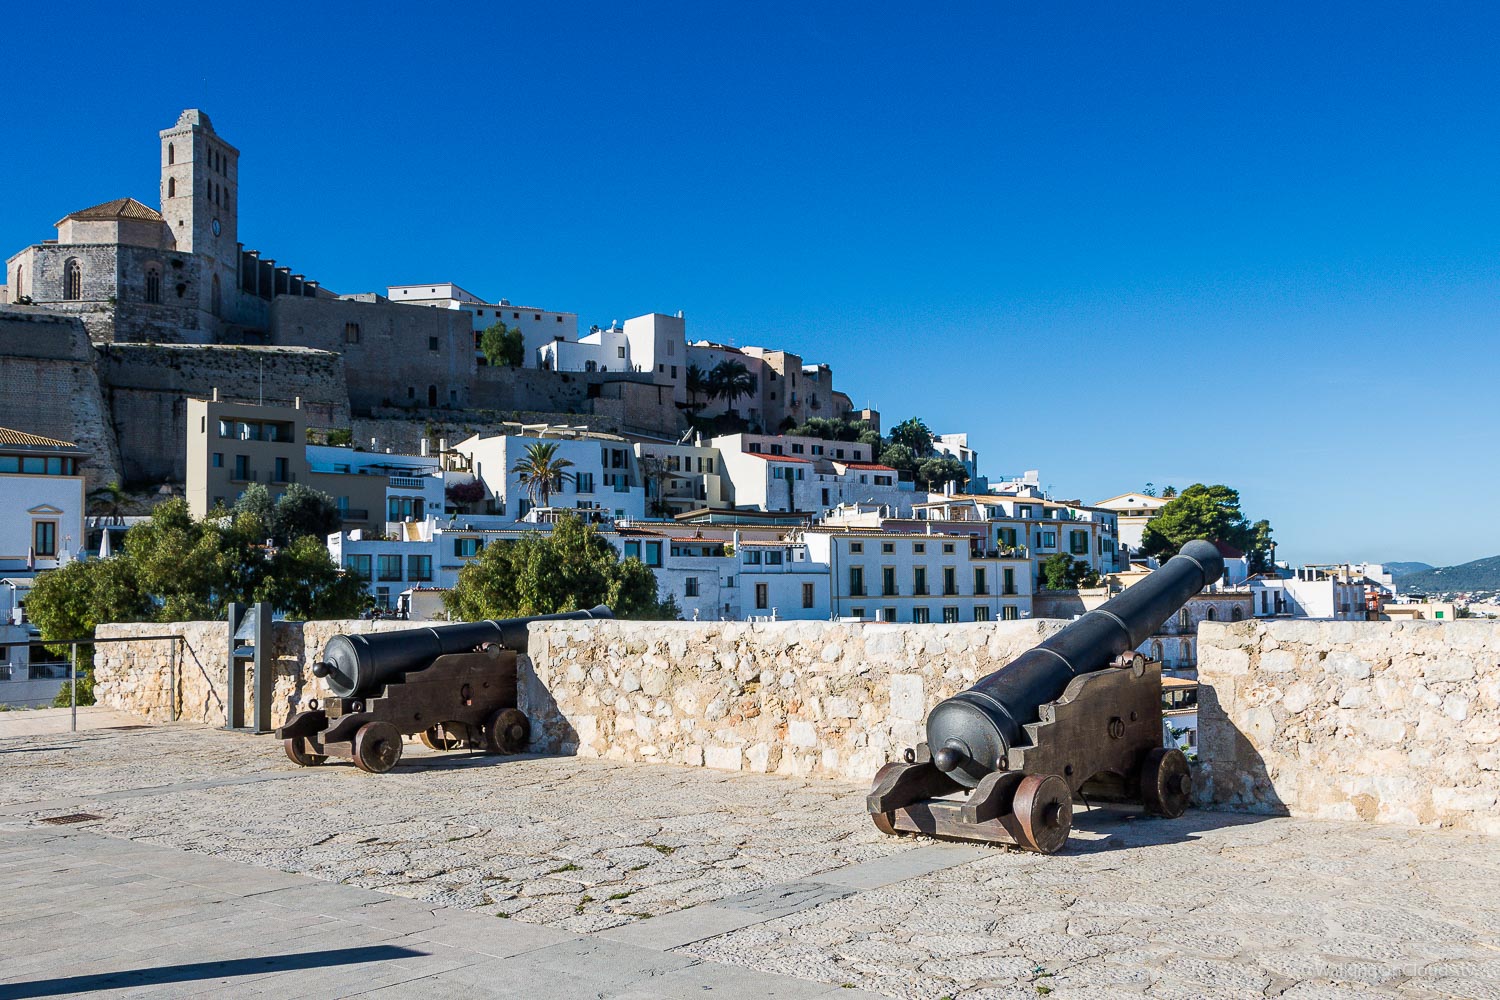 Als Kreuzfahrtblog Ibiza erleben - die Alstadt und Sehenswürdigkeiten - Mittemeerkreuzfahrt mit der TUI Mein Schiff 5 - Welche Ausfluege kann man auf Ibiza unternehmen? Reiseblog über Kreuzfahrten und Fernreisen für Alleinreisende Menschen